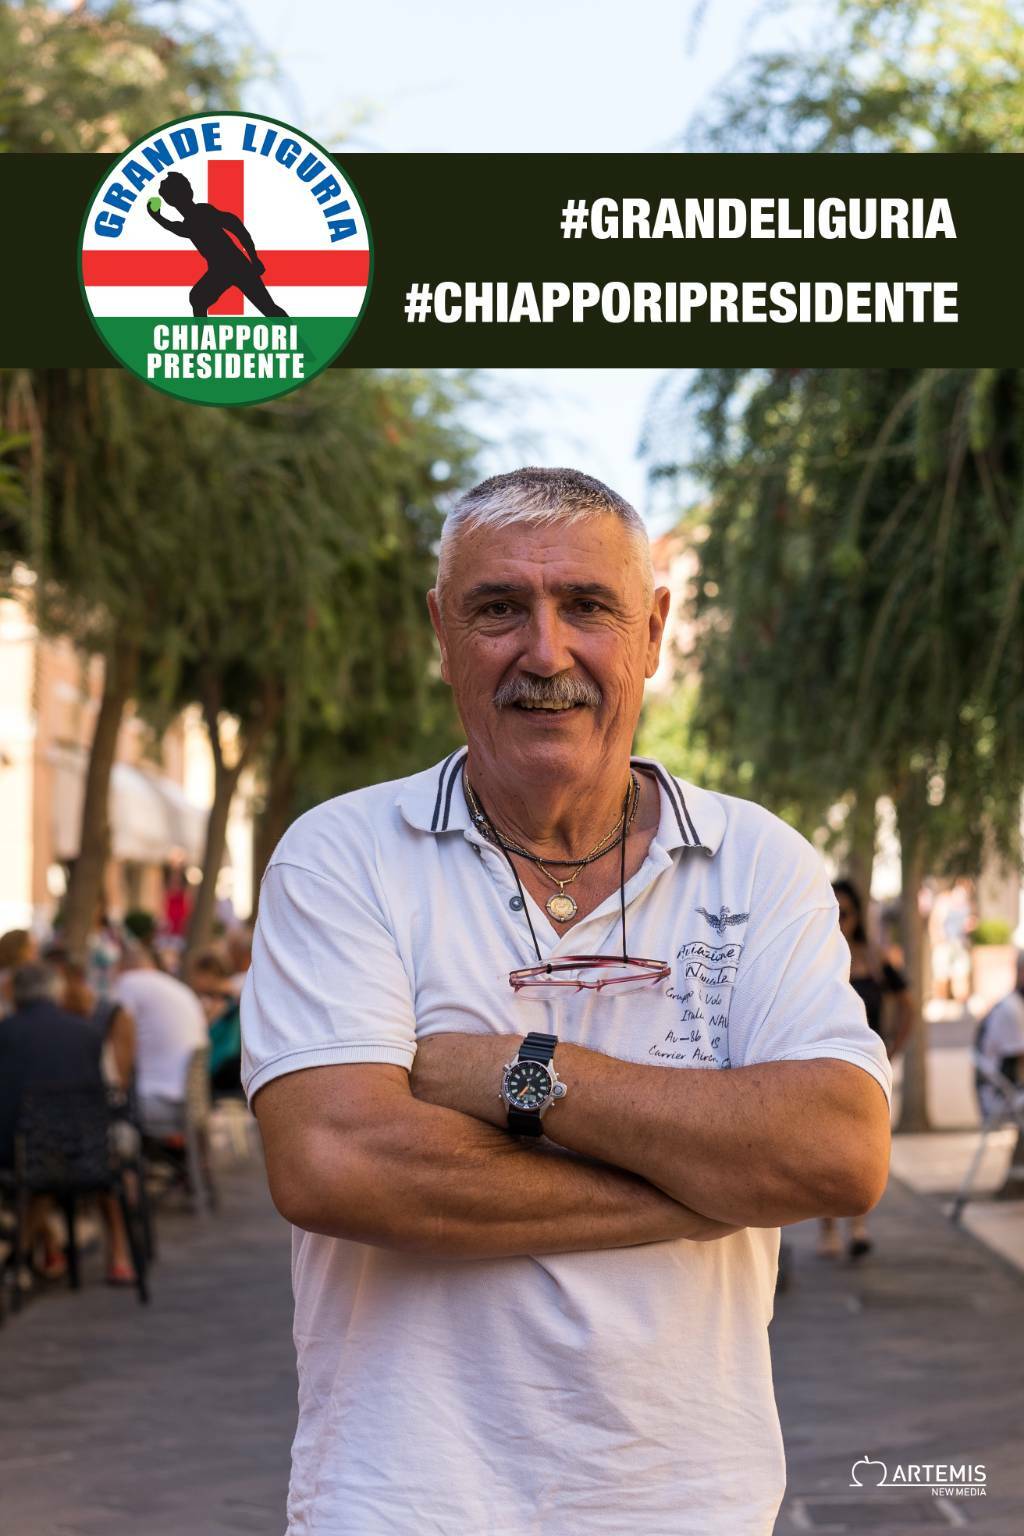 Regionali 2020, Chiappori (Grande Liguria): «Toti lascia una pesante eredità al prossimo presidente»